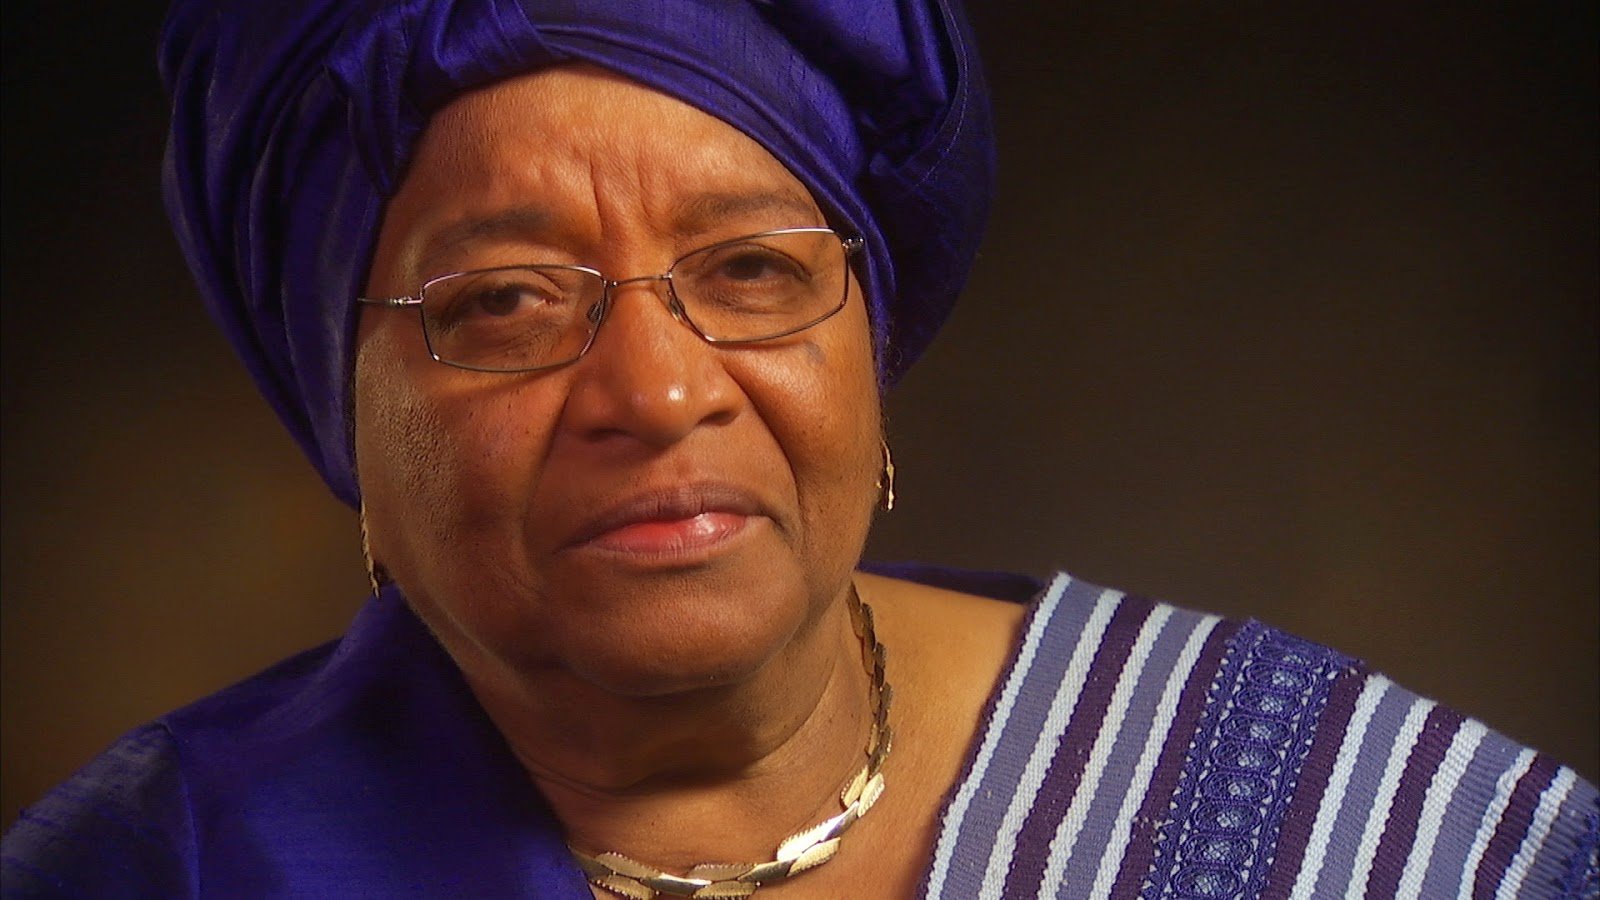 Η πρόεδρος της Λιβερίας απηύθυνε απελπισμένη έκκληση για βοήθεια